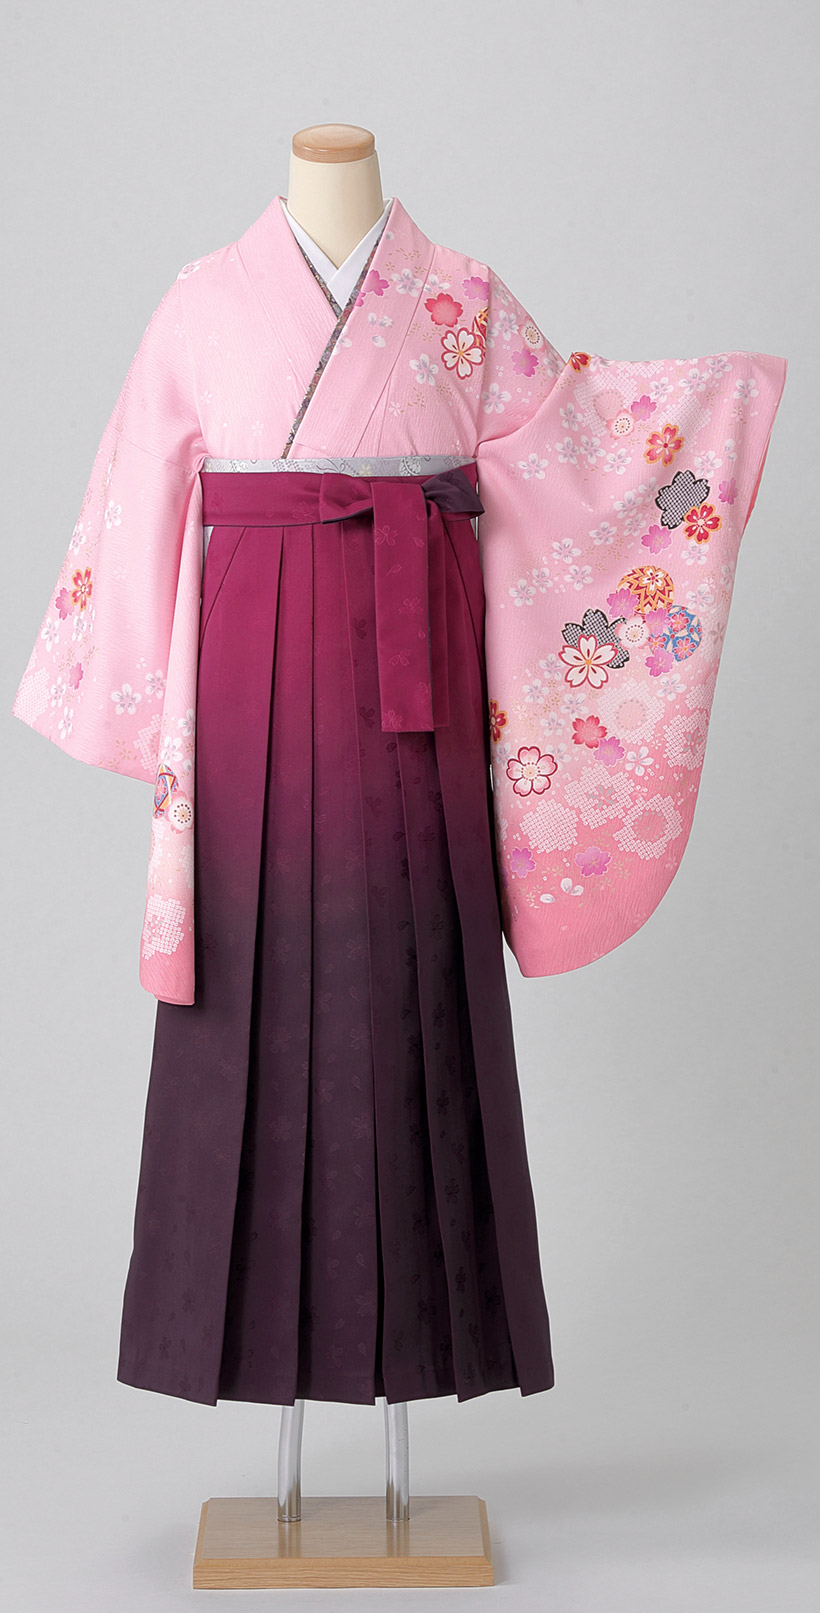 レンタル袴&着物 「ピンク 絞り桜」&「ワイン 地紋ボカシ」 | 丸昌